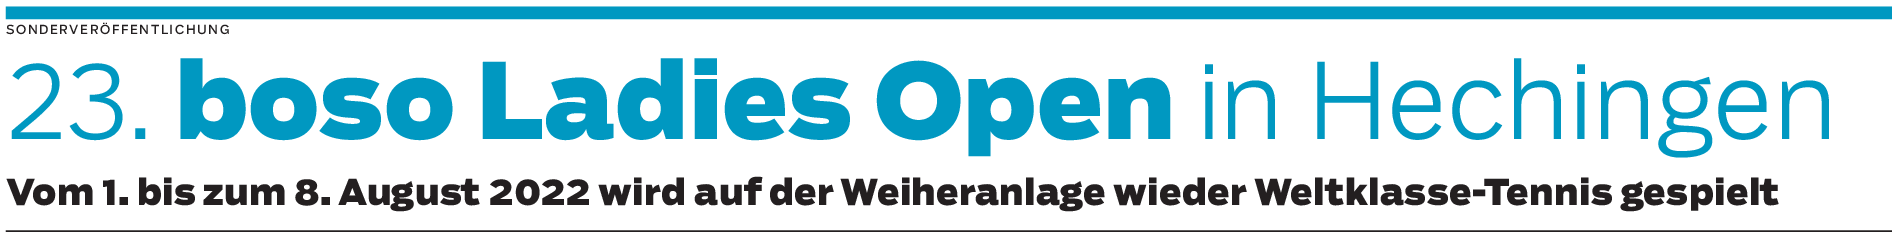 boso Ladies Open 2022 Hechingen: Weltklasse-Ladies „bäck in the Zollernstädt“